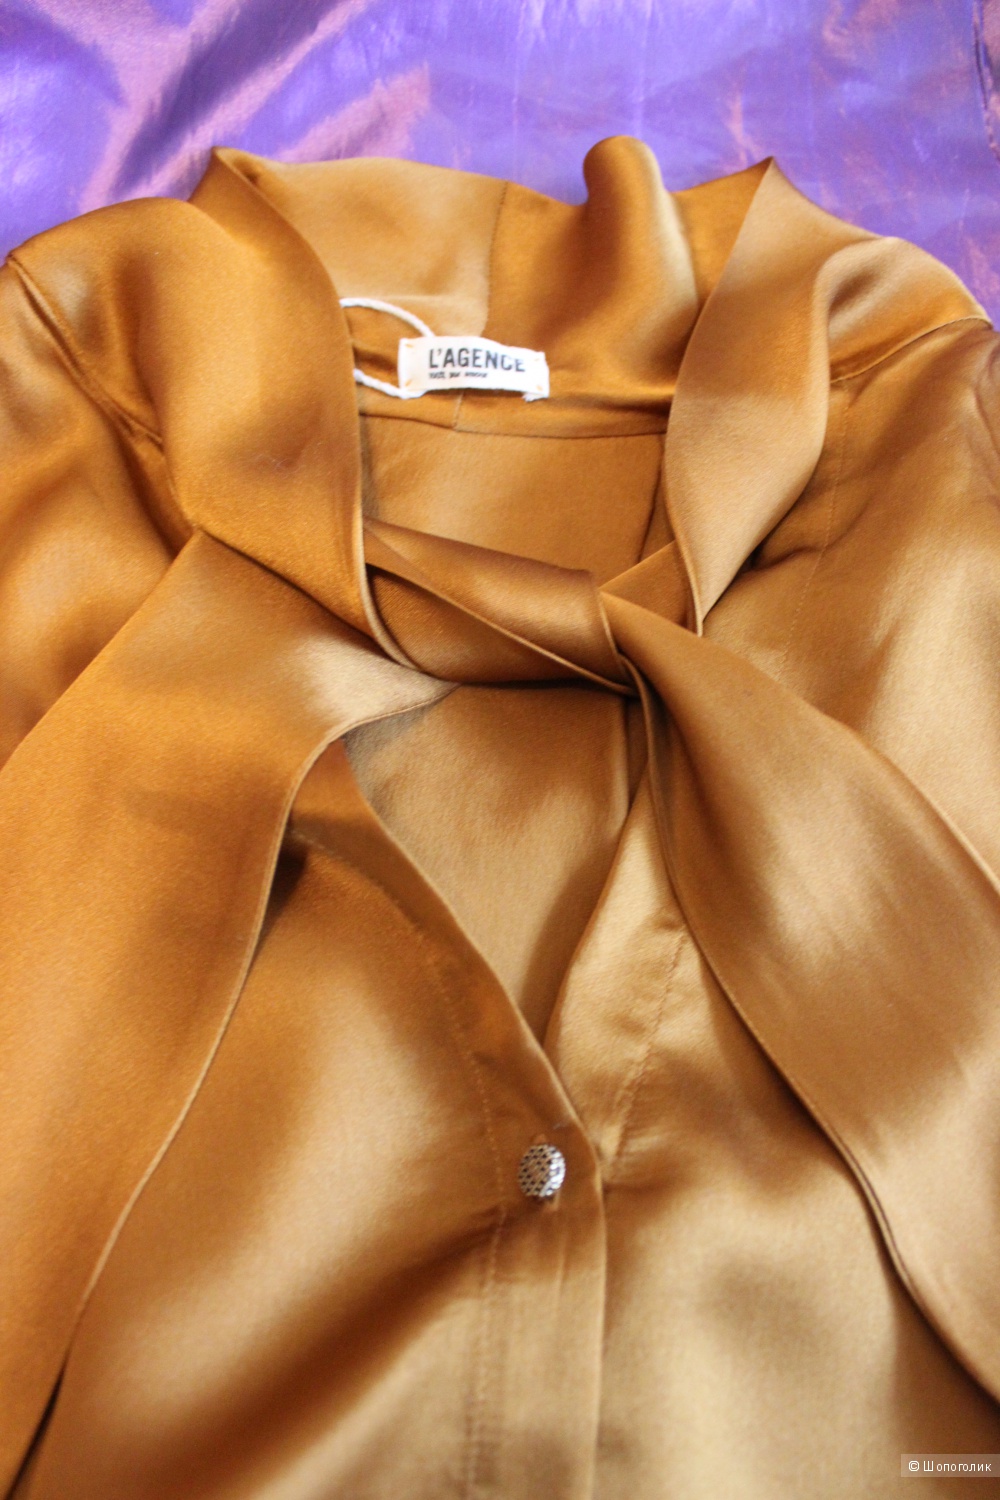 Новая шелковая блузка L'AGENCE, золотисто-коричневый цвет на 46-48 размер.